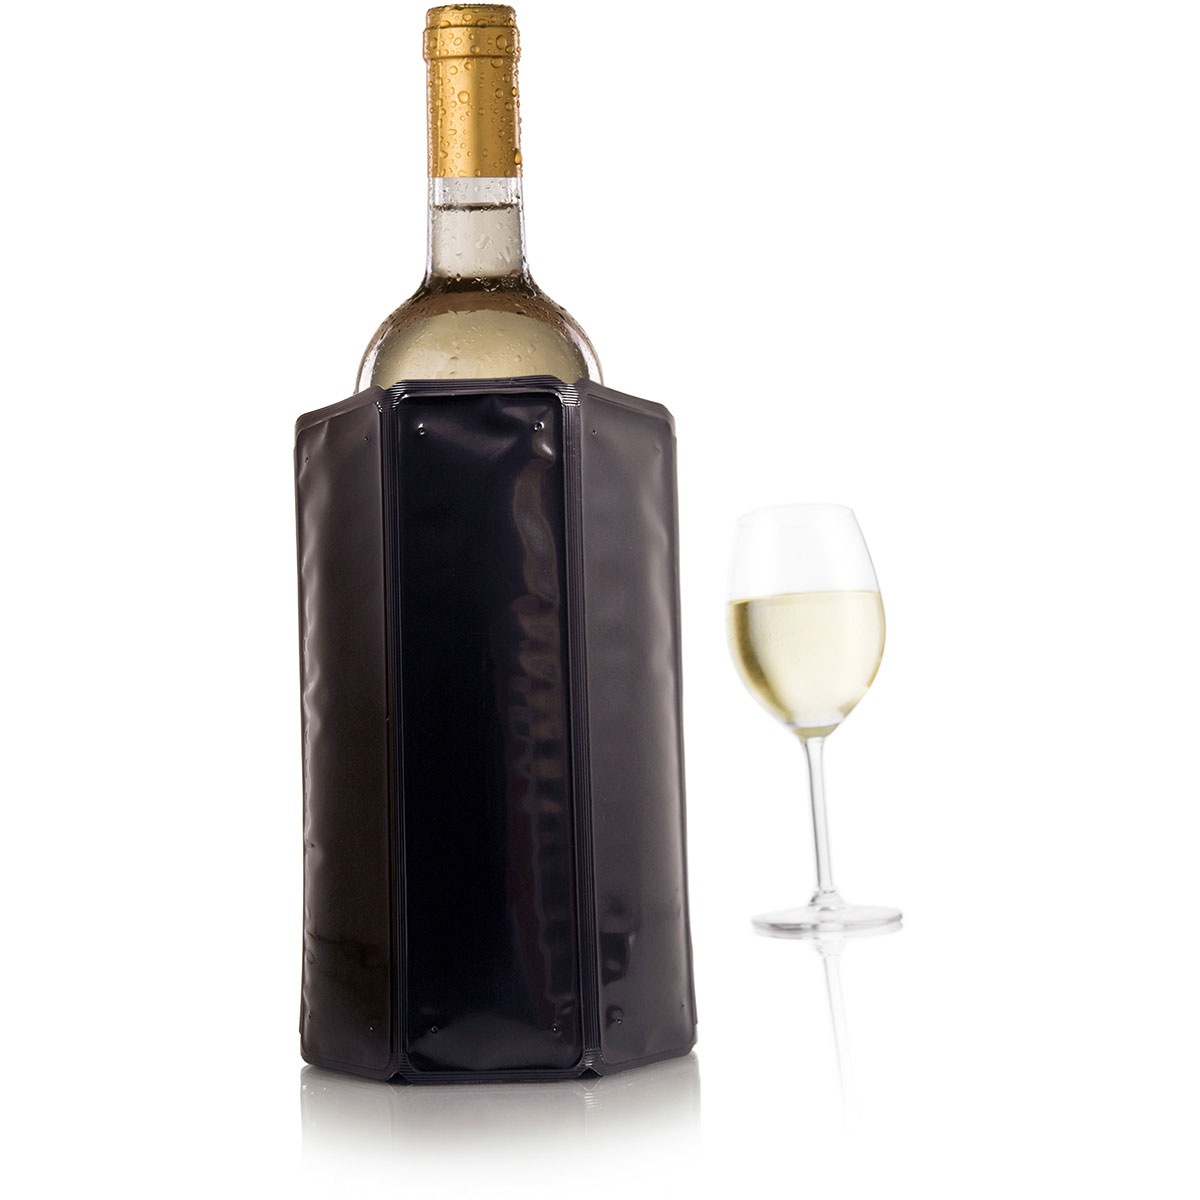 Vacu Vin Aktiv Weinkühler Motiv Schwarz 0,75 -1,0 Liter